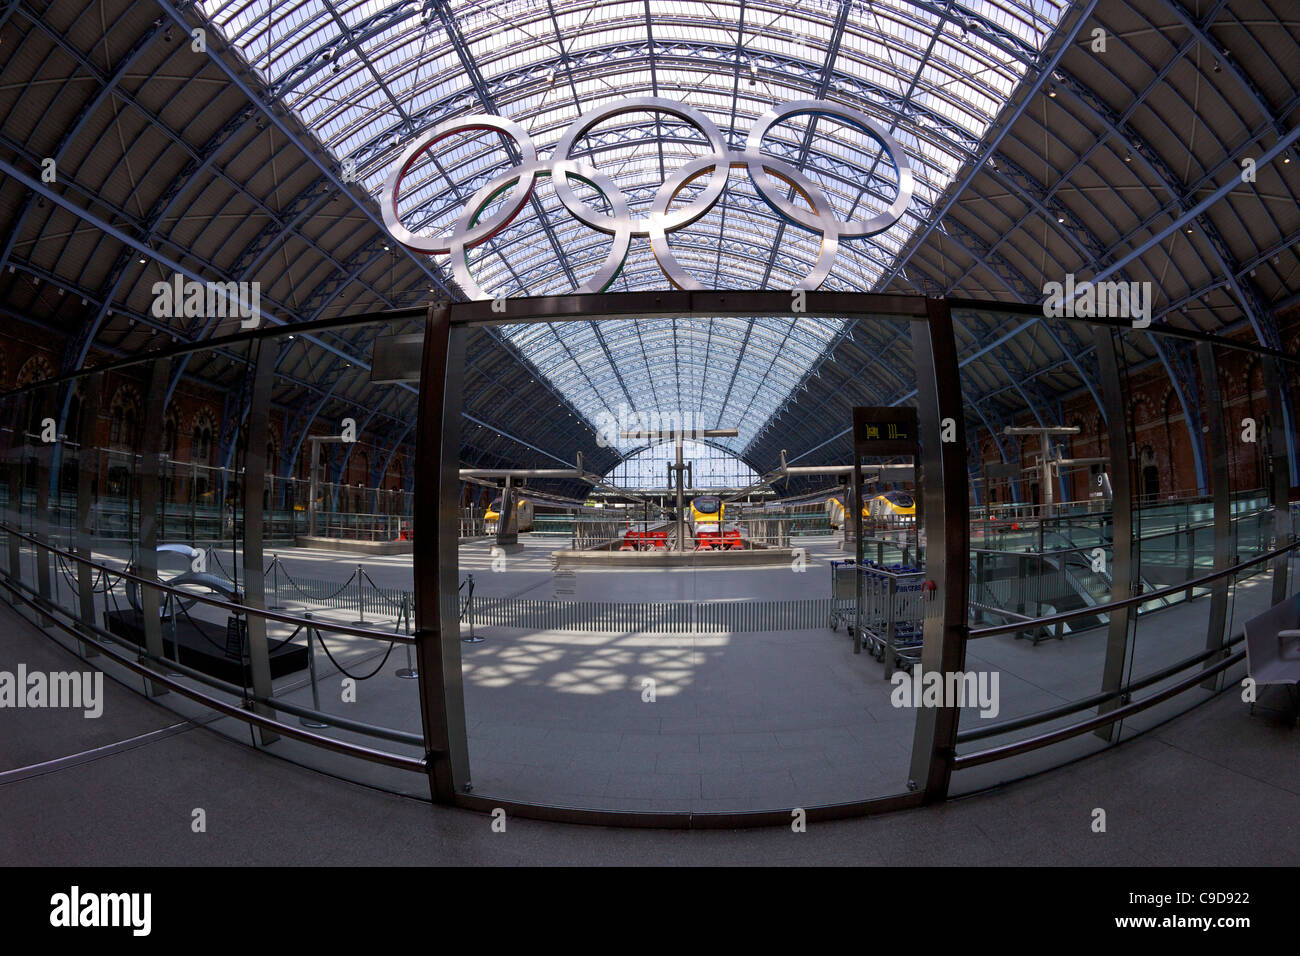 Anelli olimpici Logo, nel terminal Eurostar della stazione di Kings Cross St Pancras stazione ferroviaria di Londra, Inghilterra, UK, Regno Unito GB Foto Stock